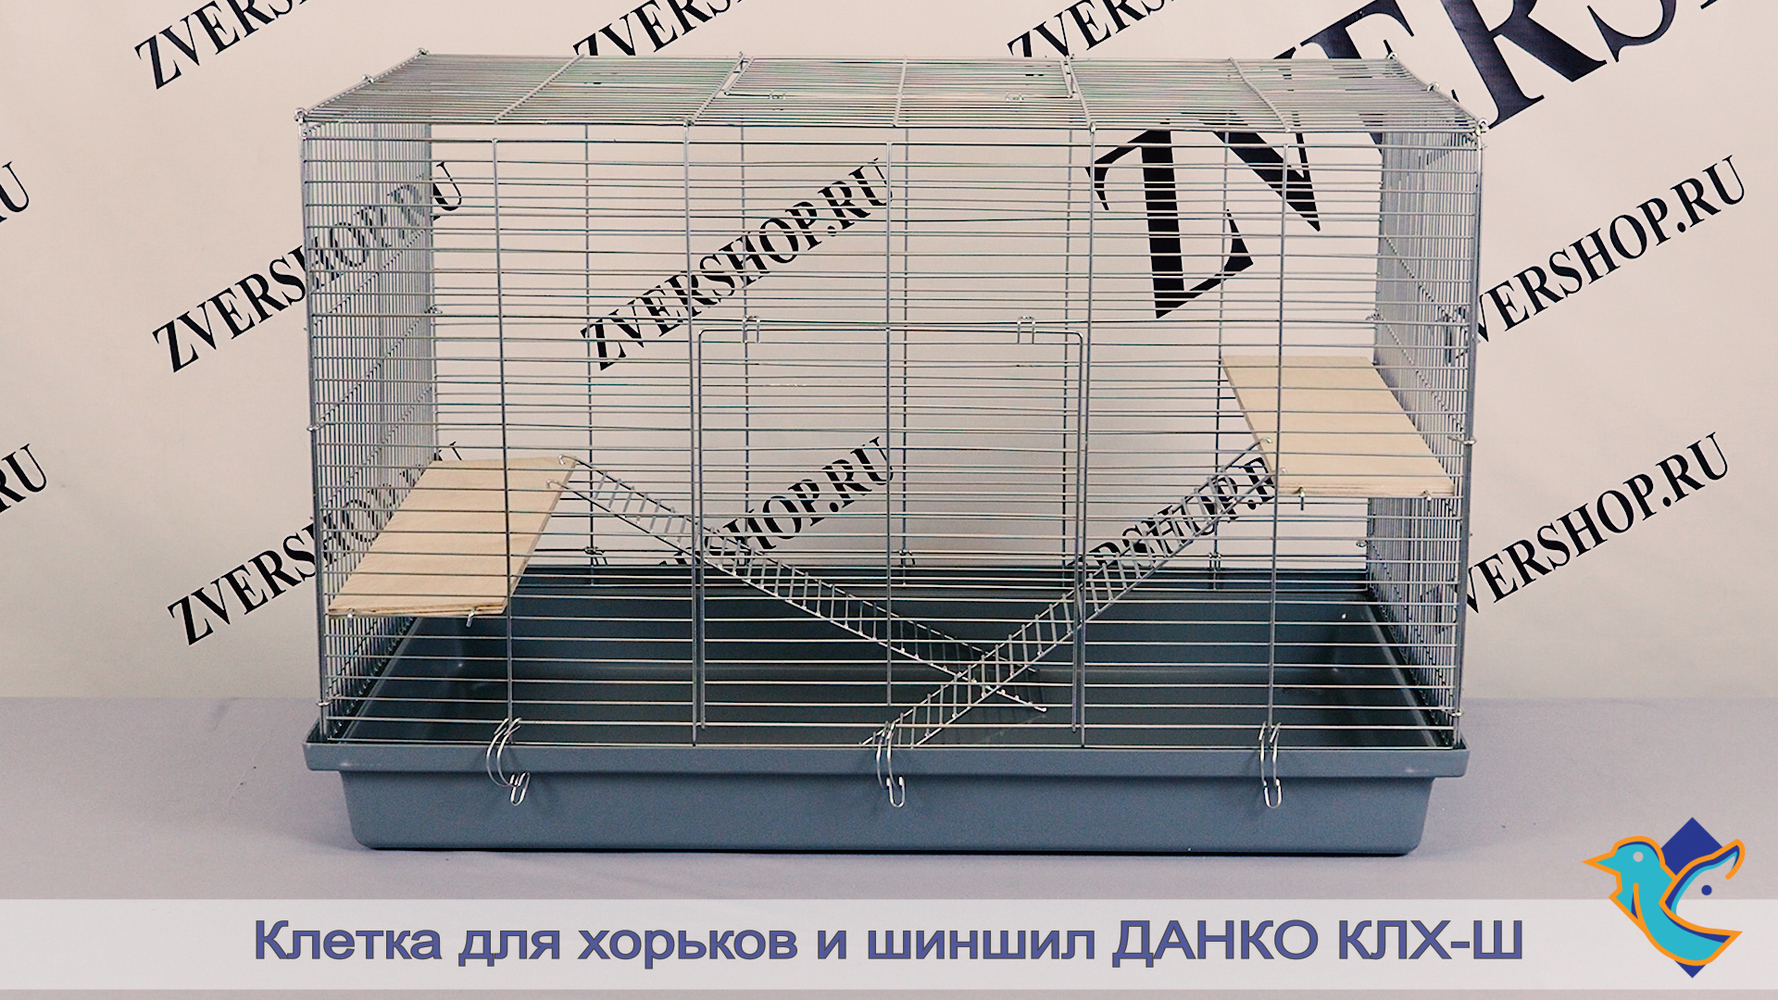 Фото Клетка для грызунов КлХ-ш универсальная на пластиковом поддоне Данко, разборная, в коробке  